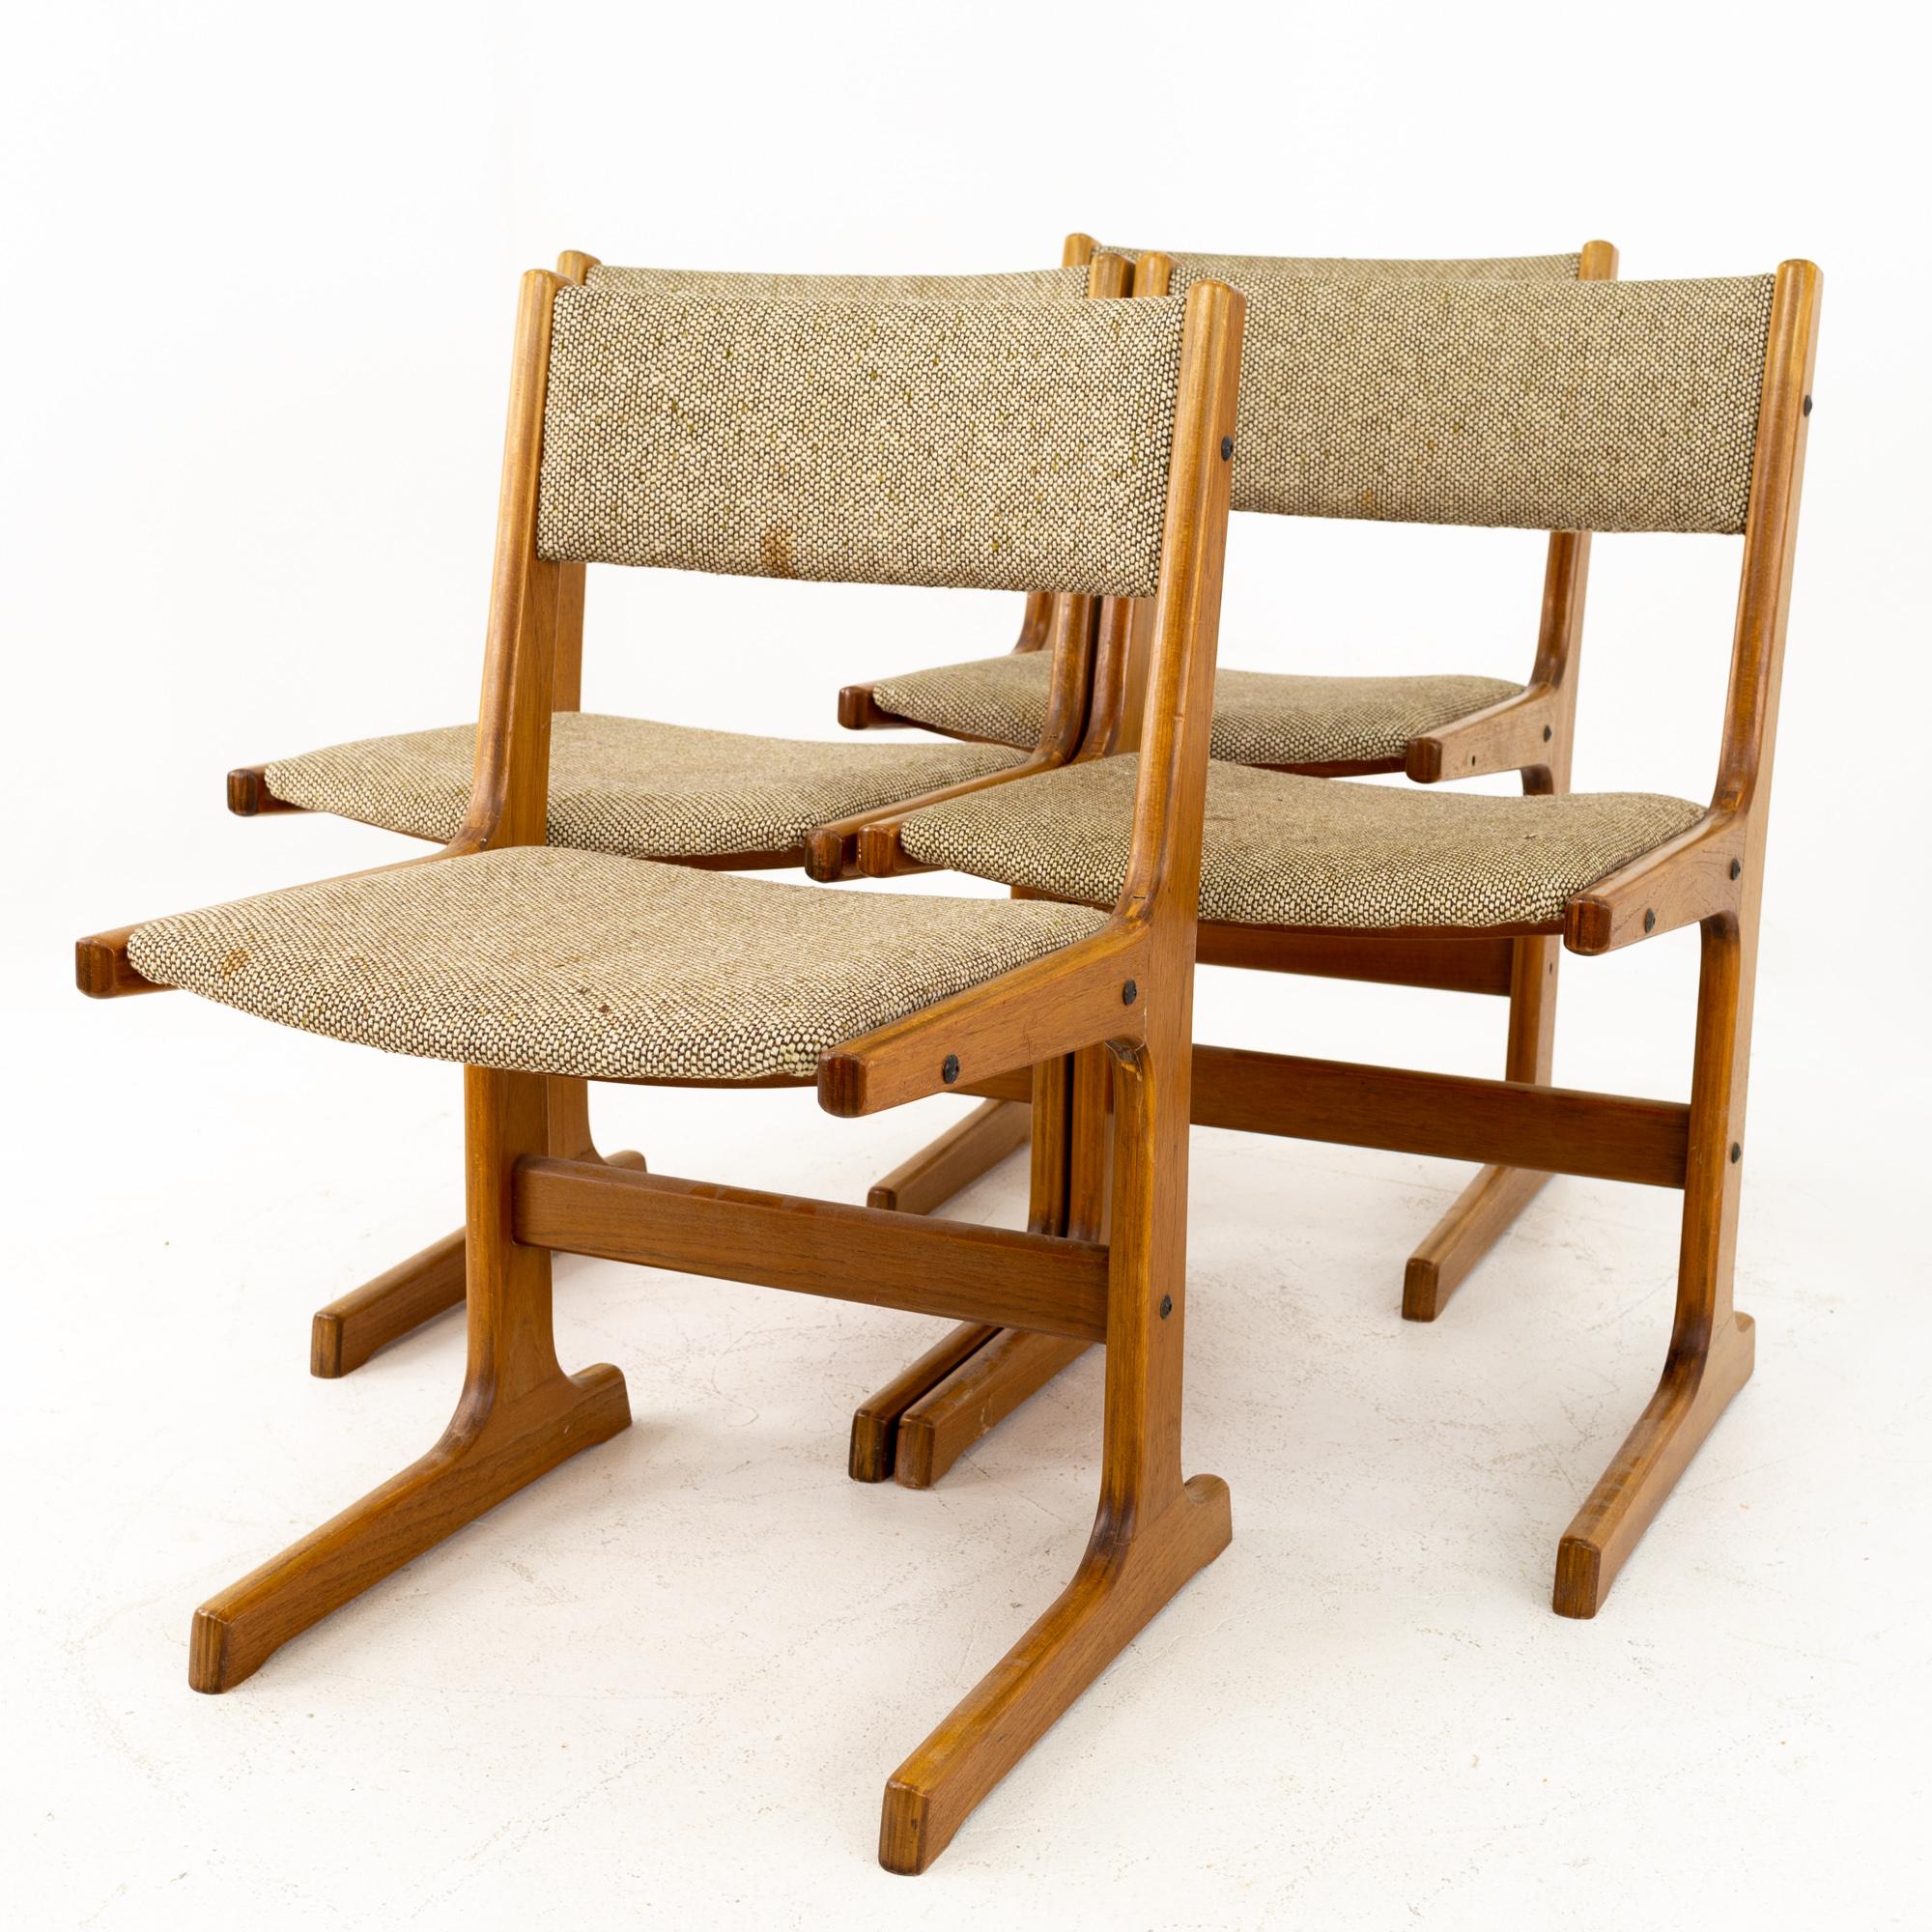 Chaises de salle à manger en teck de style Mobler Gangso - Set of 4
Ces chaises mesurent 19 pouces de large, 18 pouces de profondeur et 31 pouces de haut

Tous les meubles peuvent être obtenus dans ce que nous appelons un état vintage restauré.